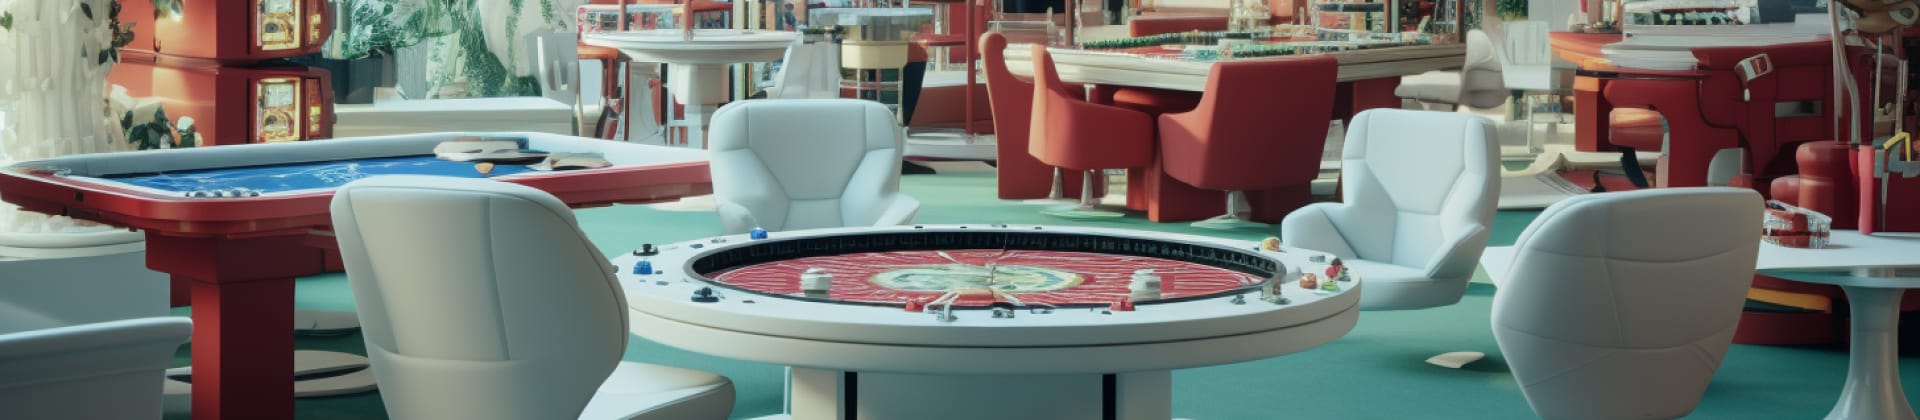 Maximera vinster med hjälp av bonusar på καζίνο utan svenskt άδειες